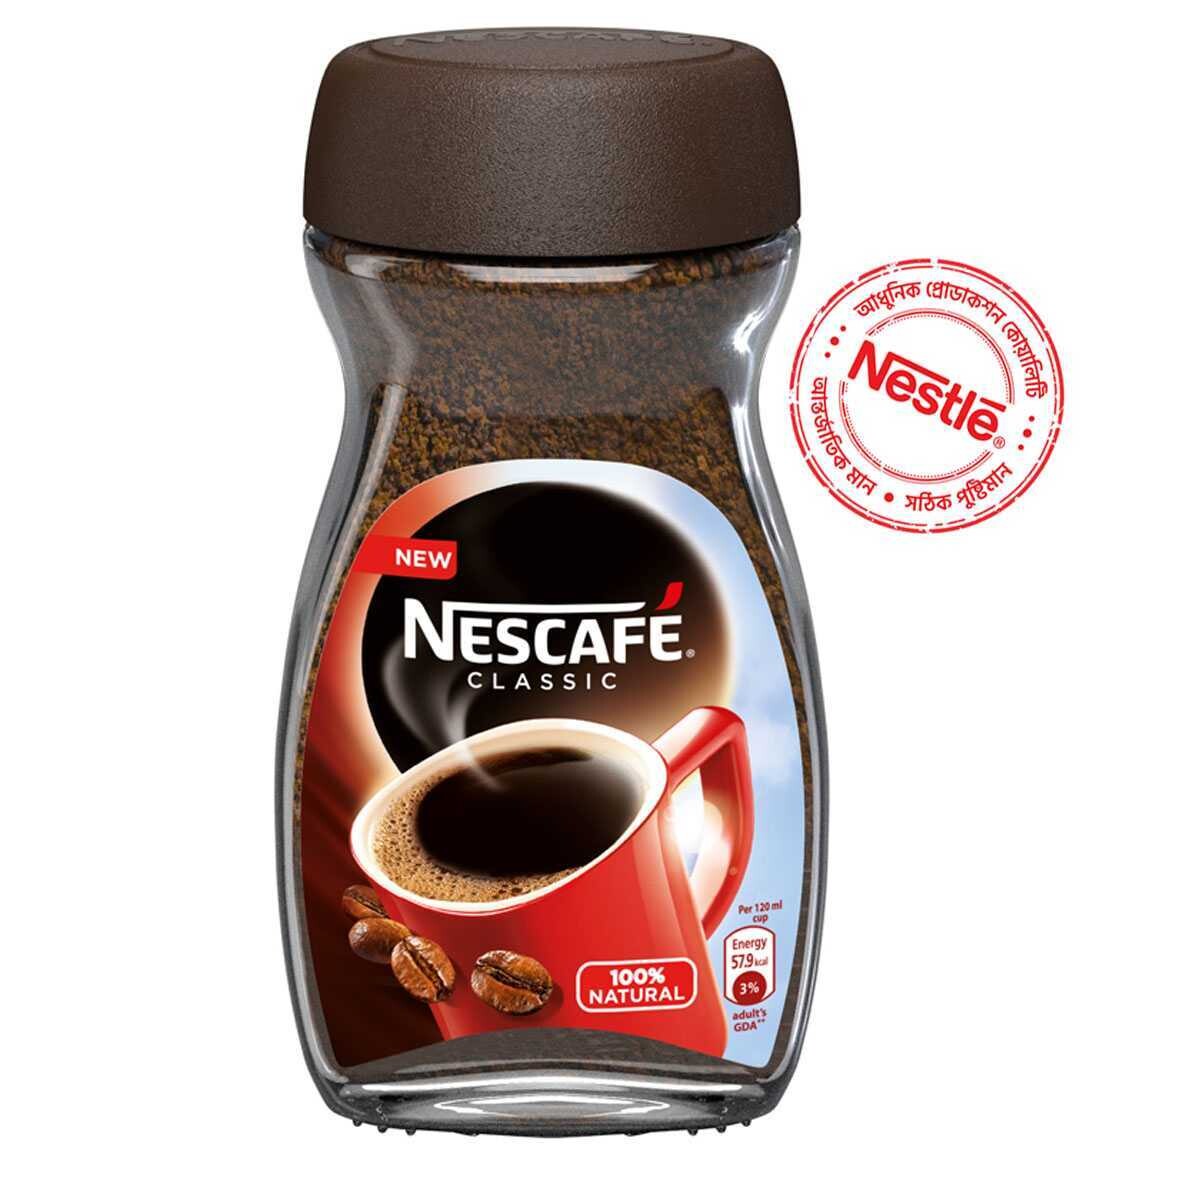 Nestlé Nescafé Classic Instant Coffee Jar 200gm